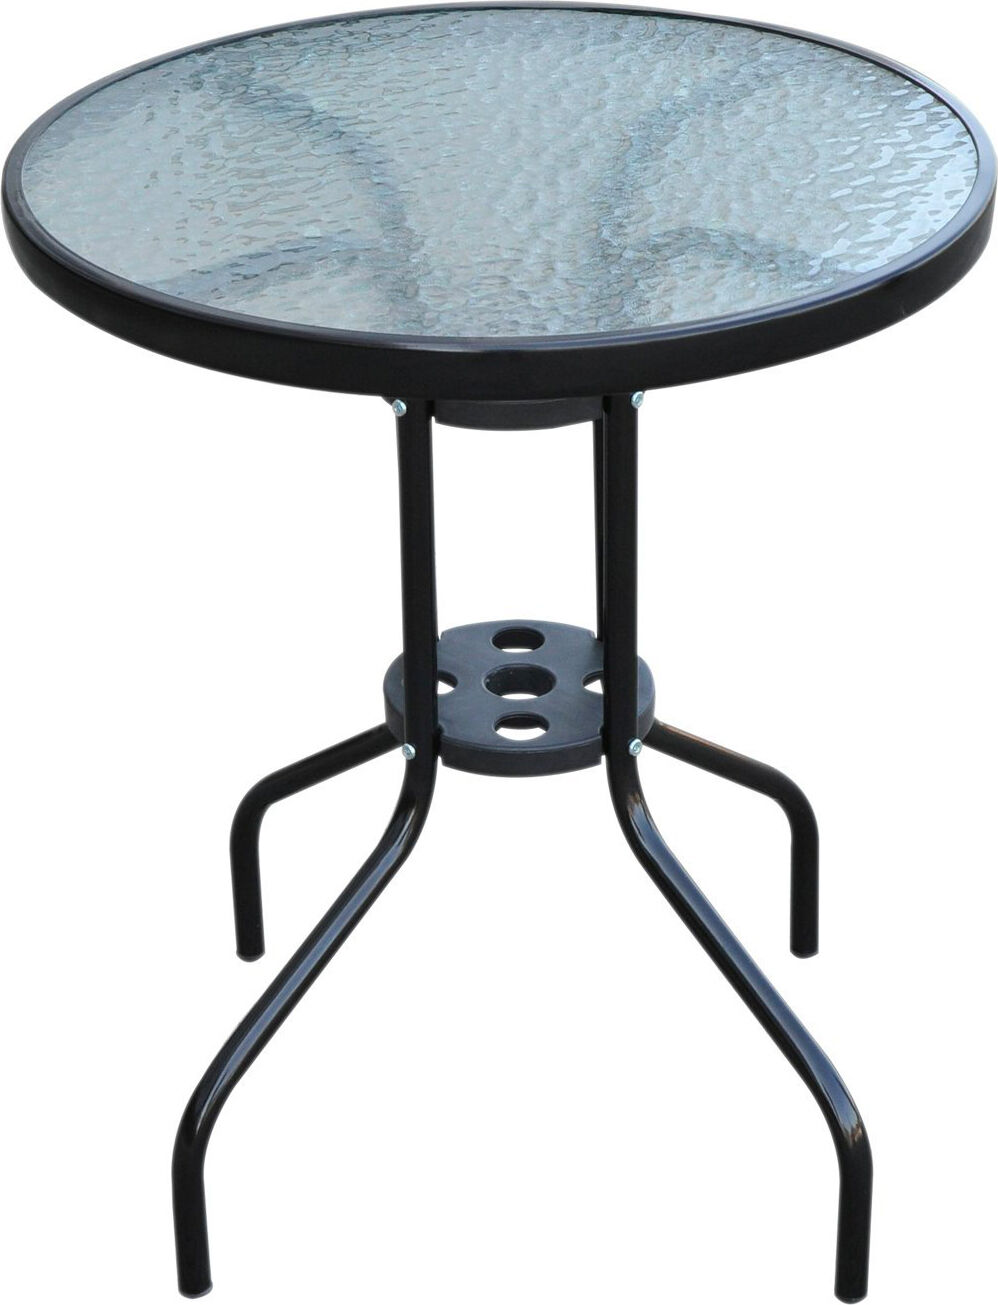 vivagarden 84b147 tavolino da giardino esterno rotondo in ferro con piano in vetro temperato Ø 60x70h cm colore nero - 84b147